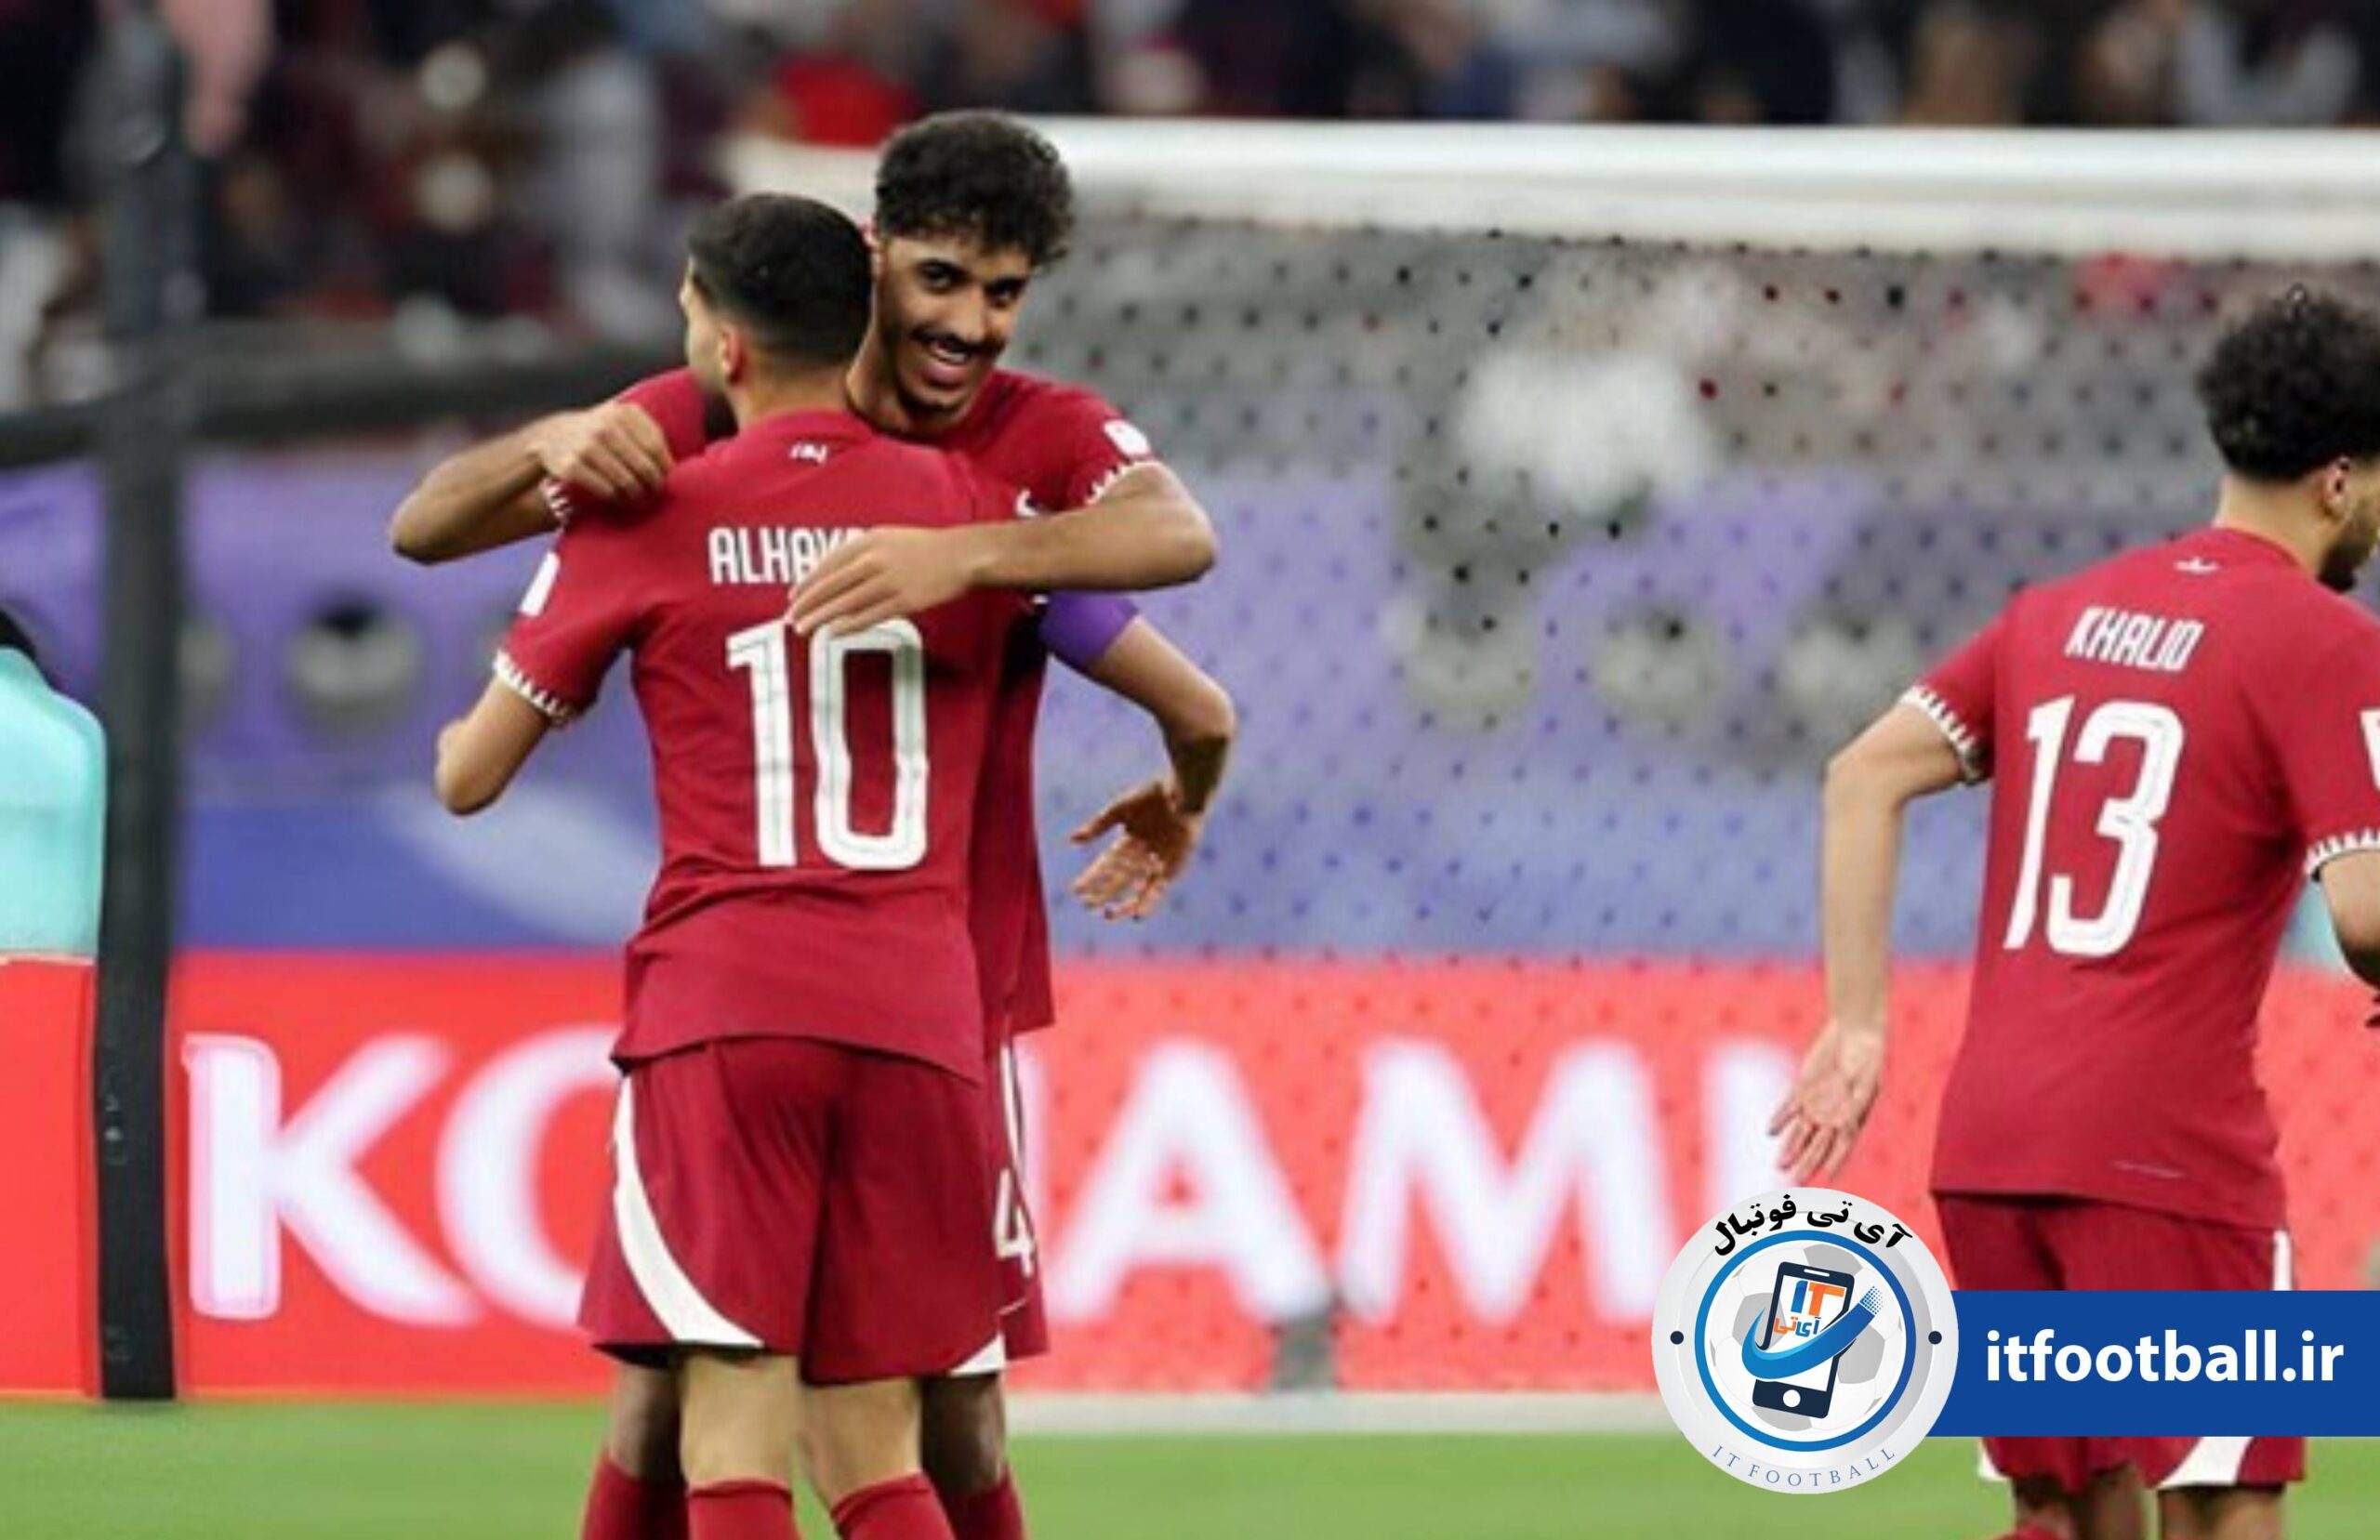 قطر و چین
آی تی فوتبال